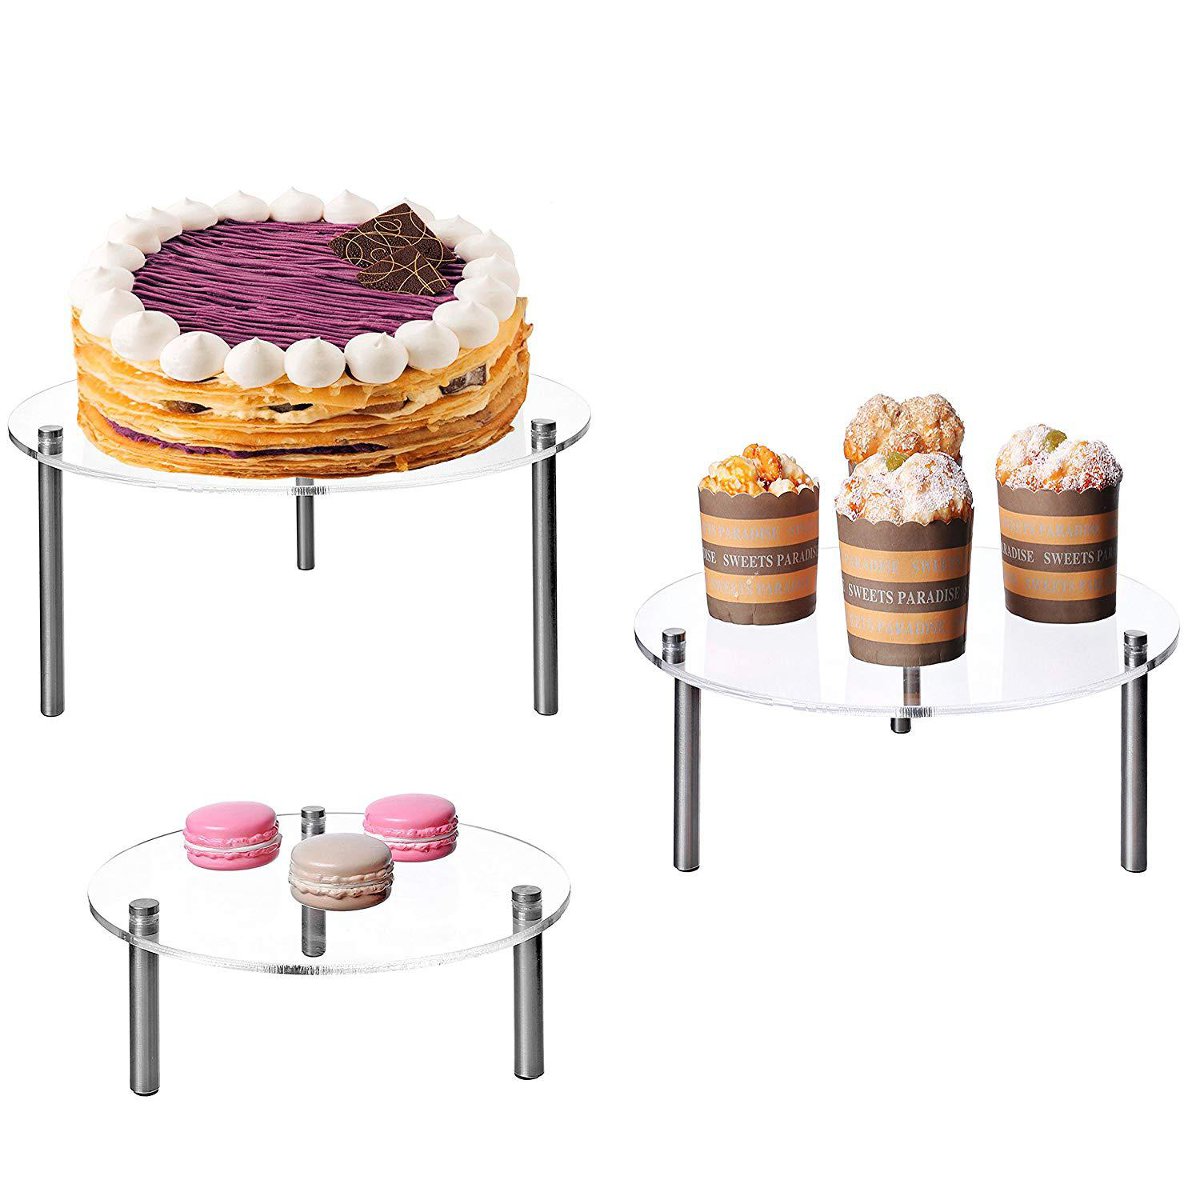 

3 Tier Cake Stand Storage Rack Wedding Birthday Party Dessert Display Holder Decorations